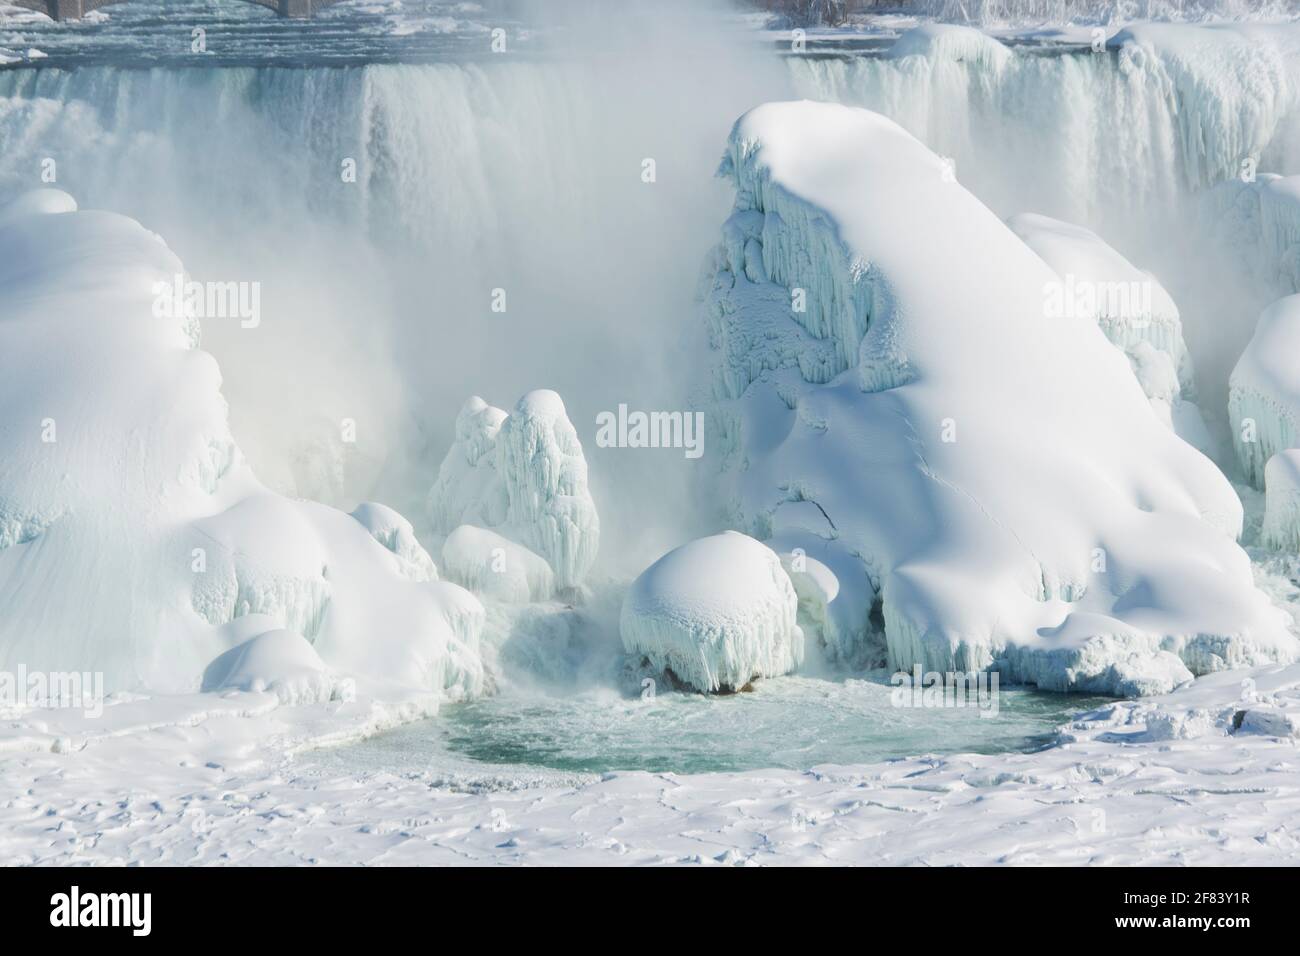 USA, New York, Niagarafälle, die American Falls waren mit riesigen Eisformationen überfroren. Stockfoto